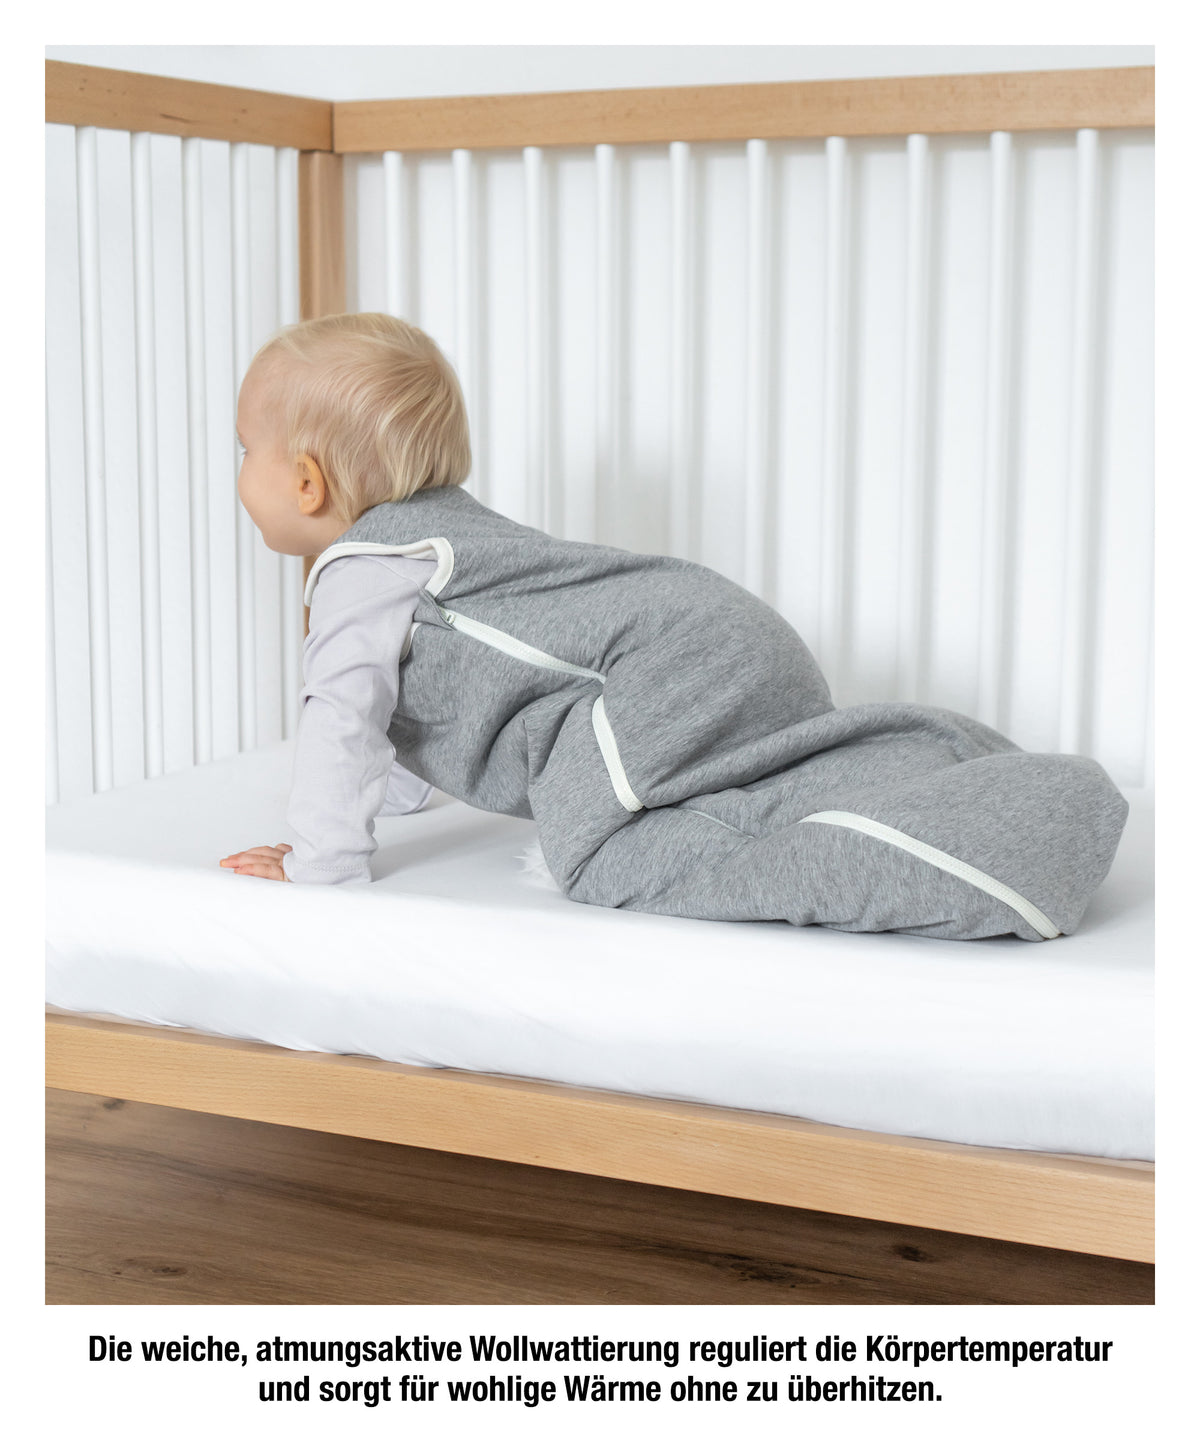 Baby-Schlafsack mit Wollfüllung.